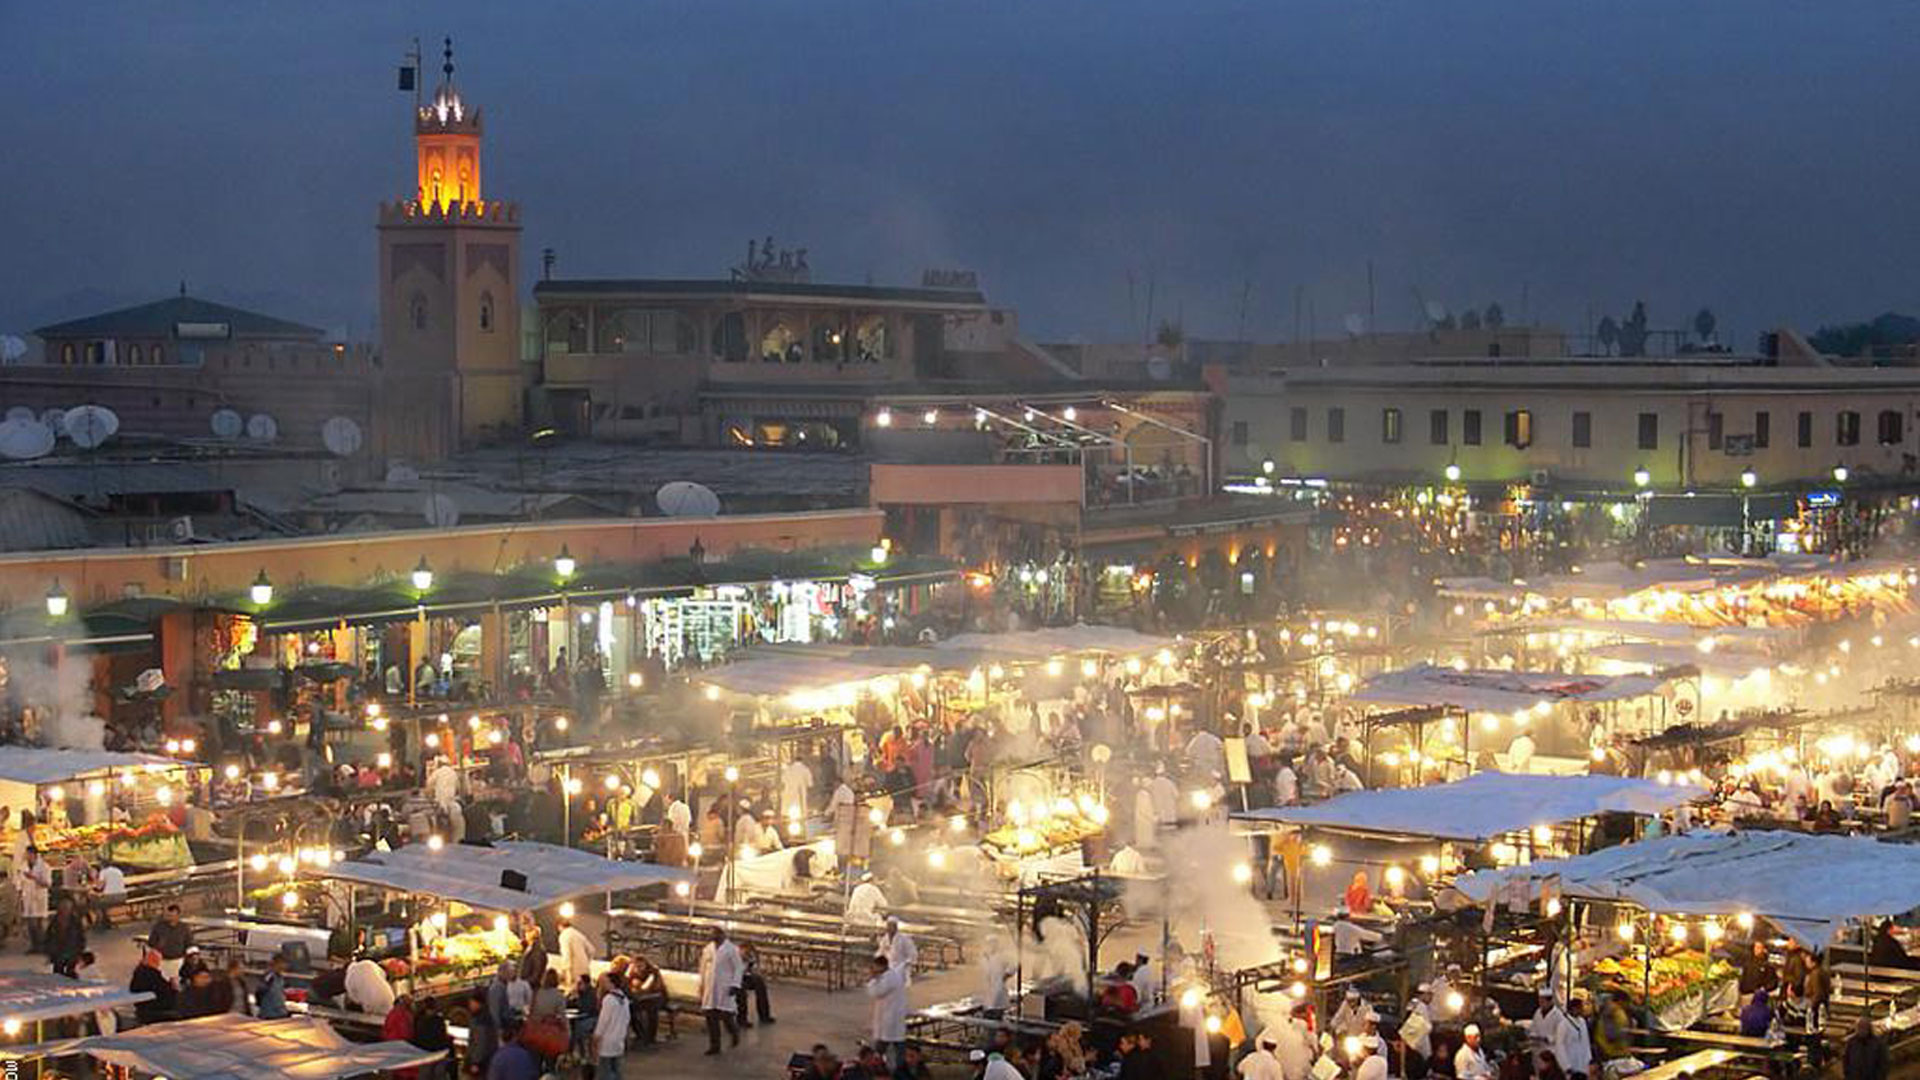 Marrakech Excurions, Visita guidata di Marrakech in privata